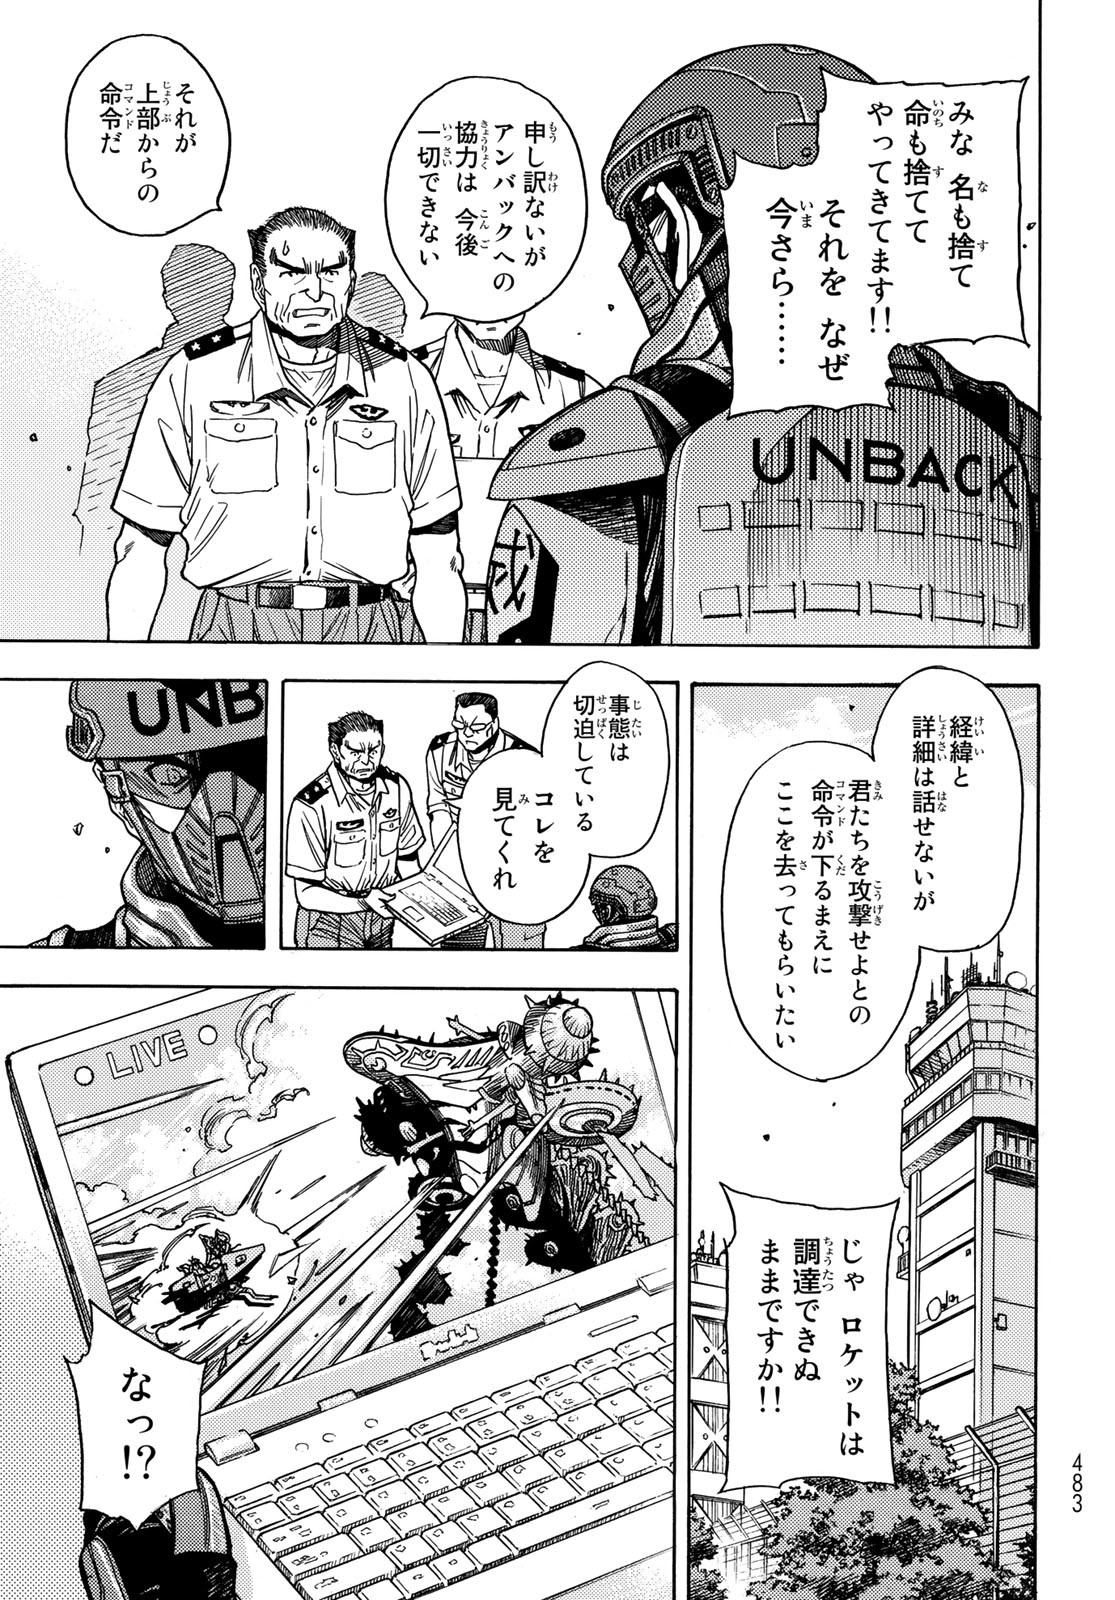 Mugou no Schnell Gear: Chikyuugai Kisouka AI - Chapter 35 - Page 15